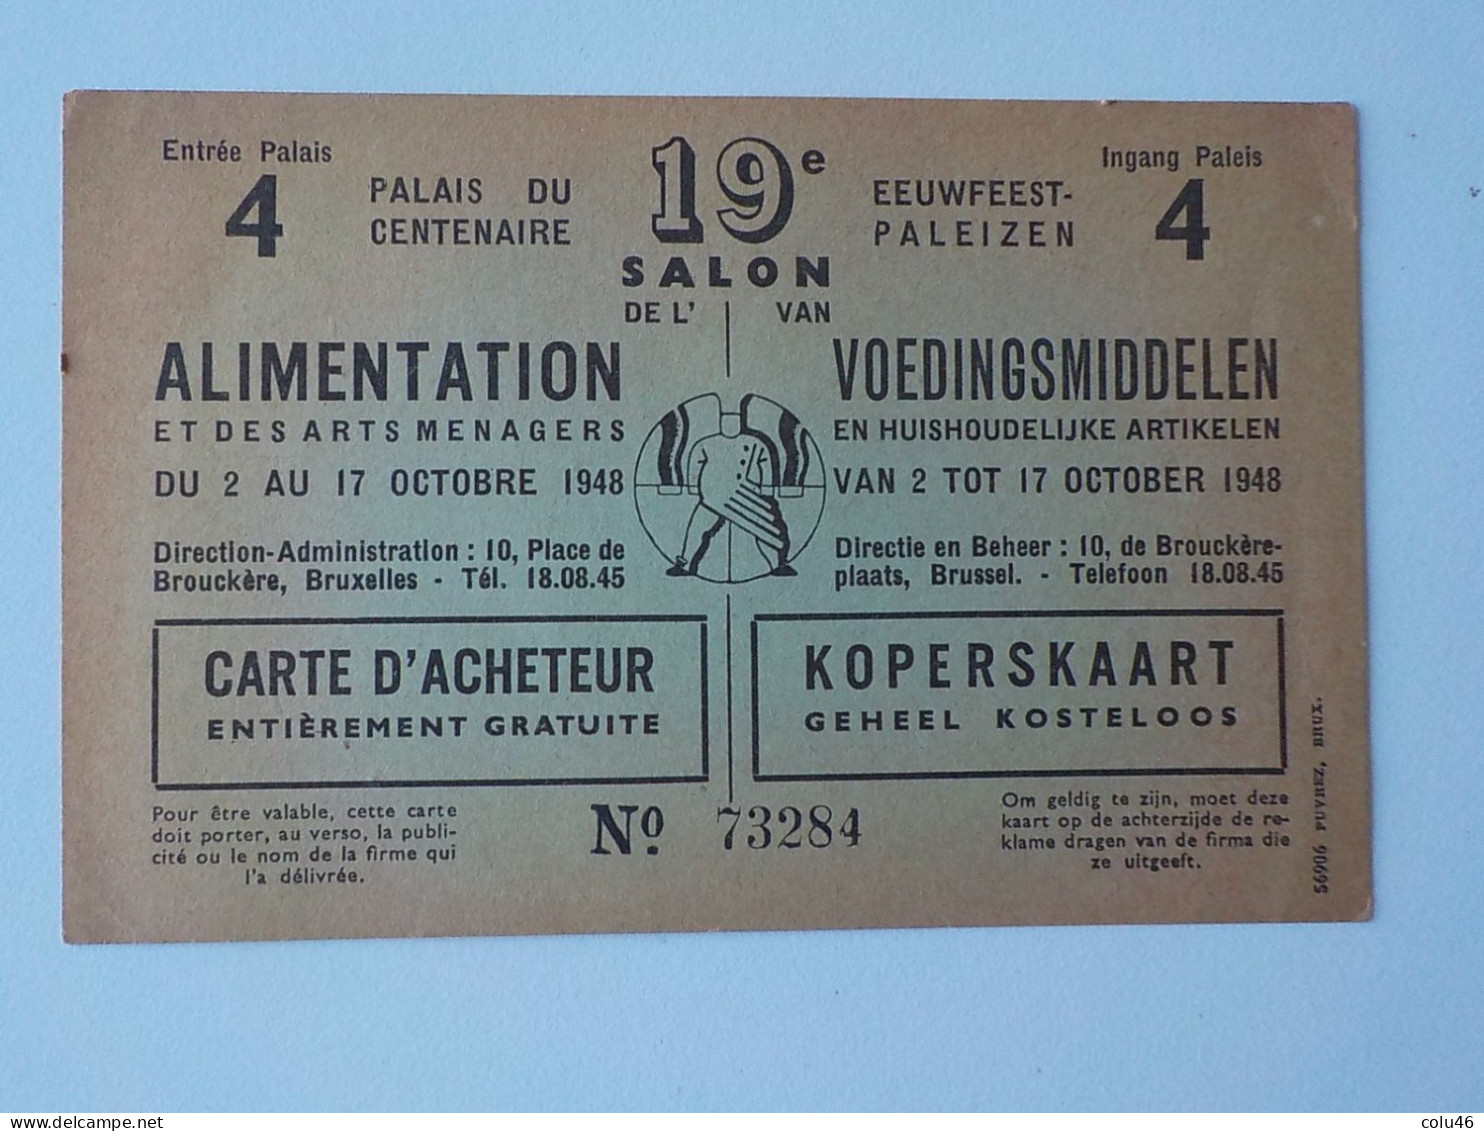 1948 Bruxelles Pub Palais Du Centenaire 19ème Salon Alimentation & Arts Ménagers Eeuwfeest Voedingsmiddelen - Feste, Eventi